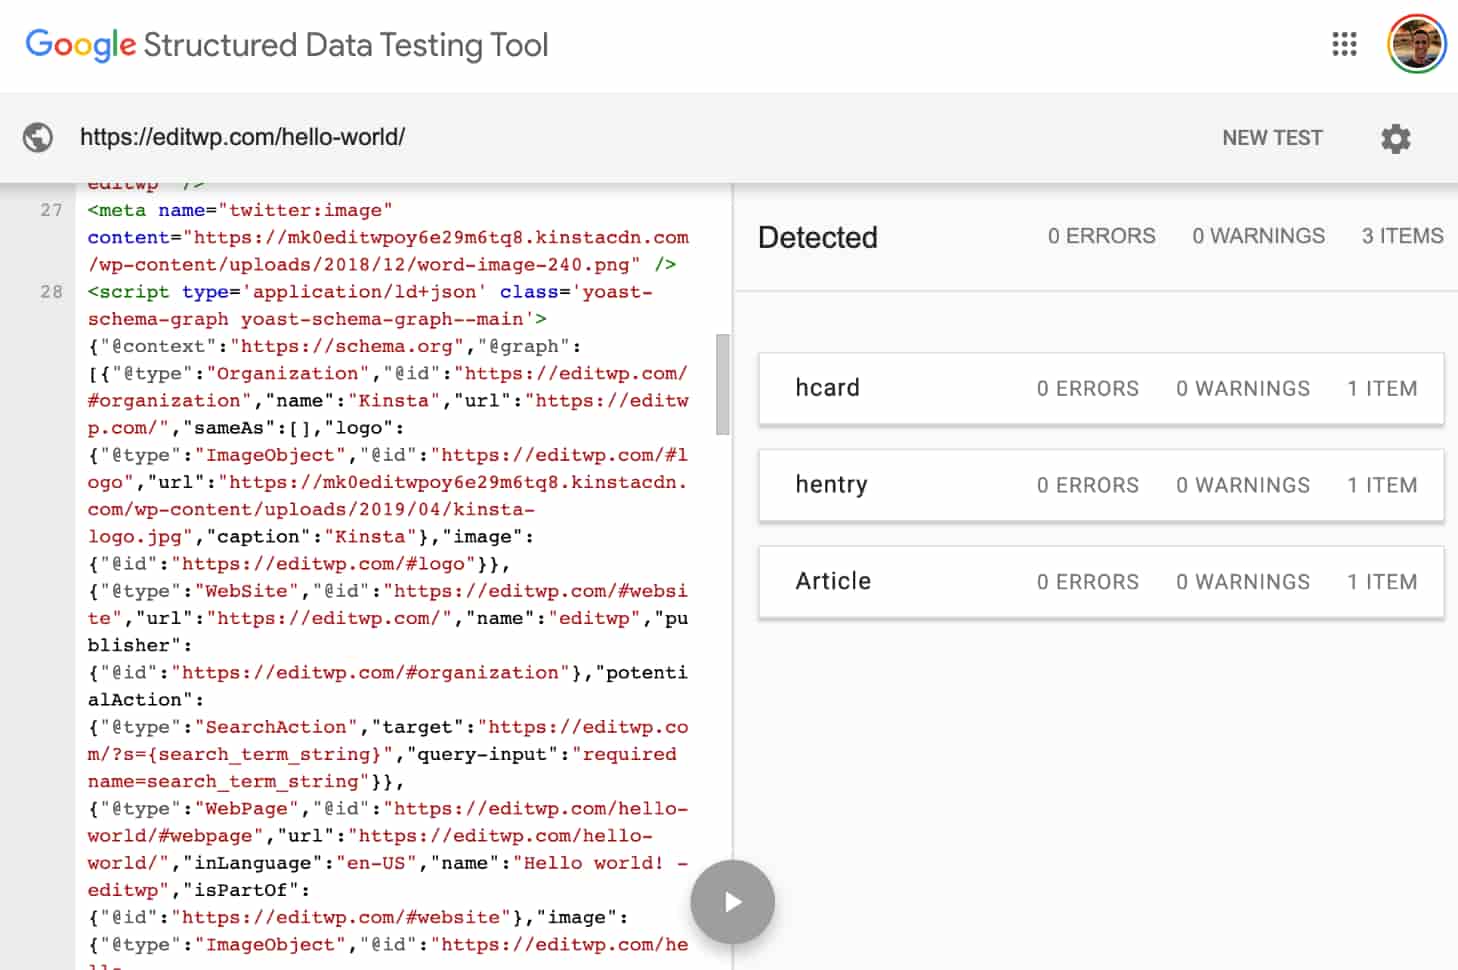 Google’s testverktyg för Strukturerad Data